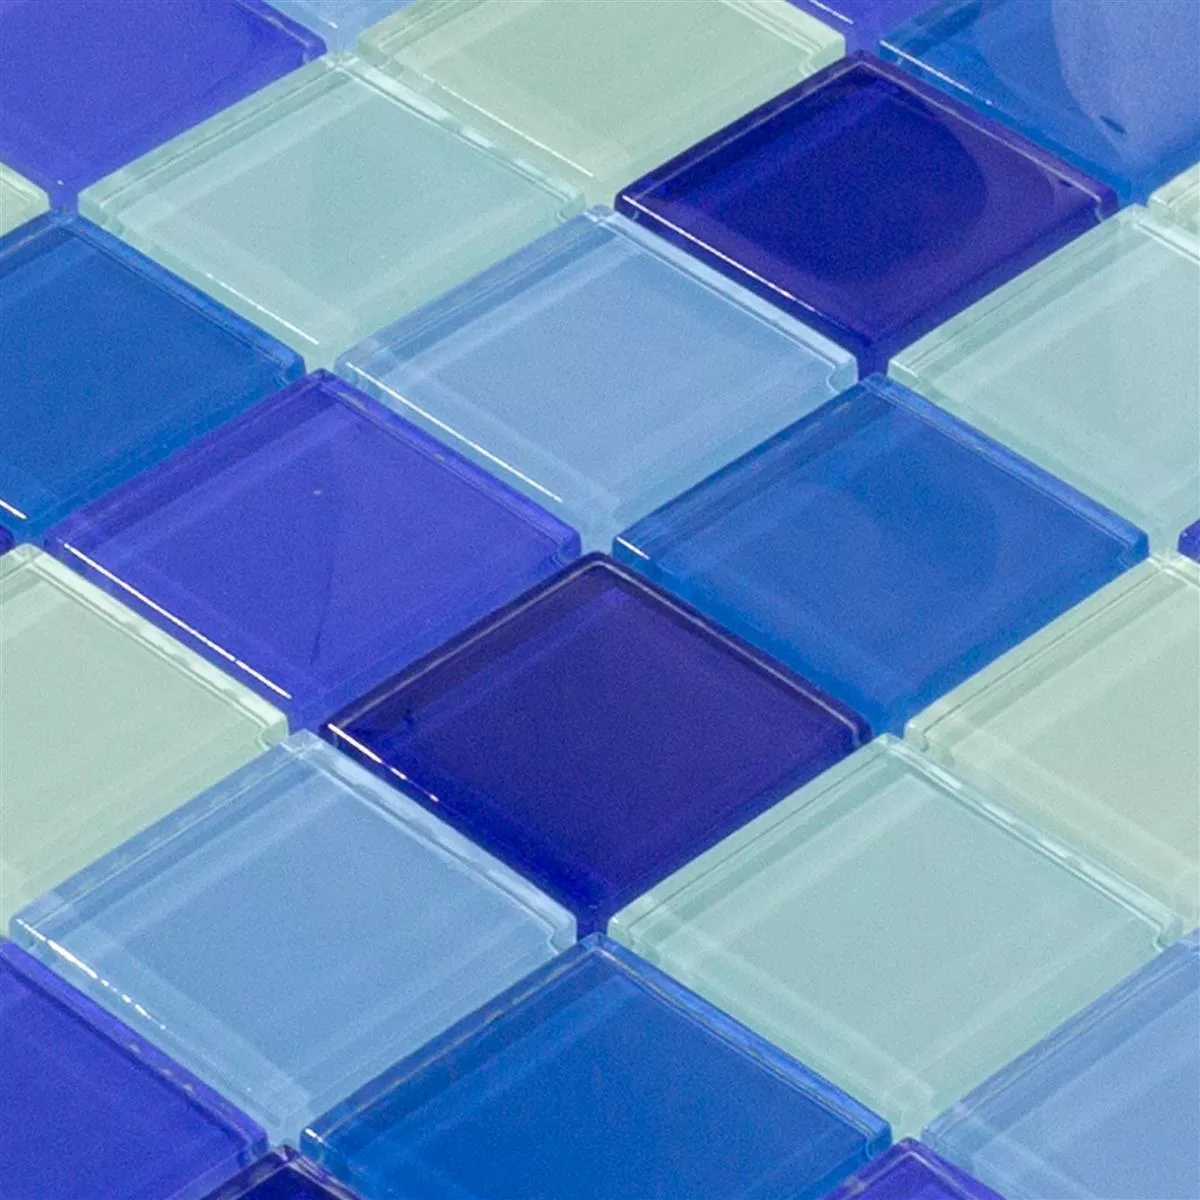 Campione Mosaico Di Vetro Piastrelle Glasgow Blu Mix